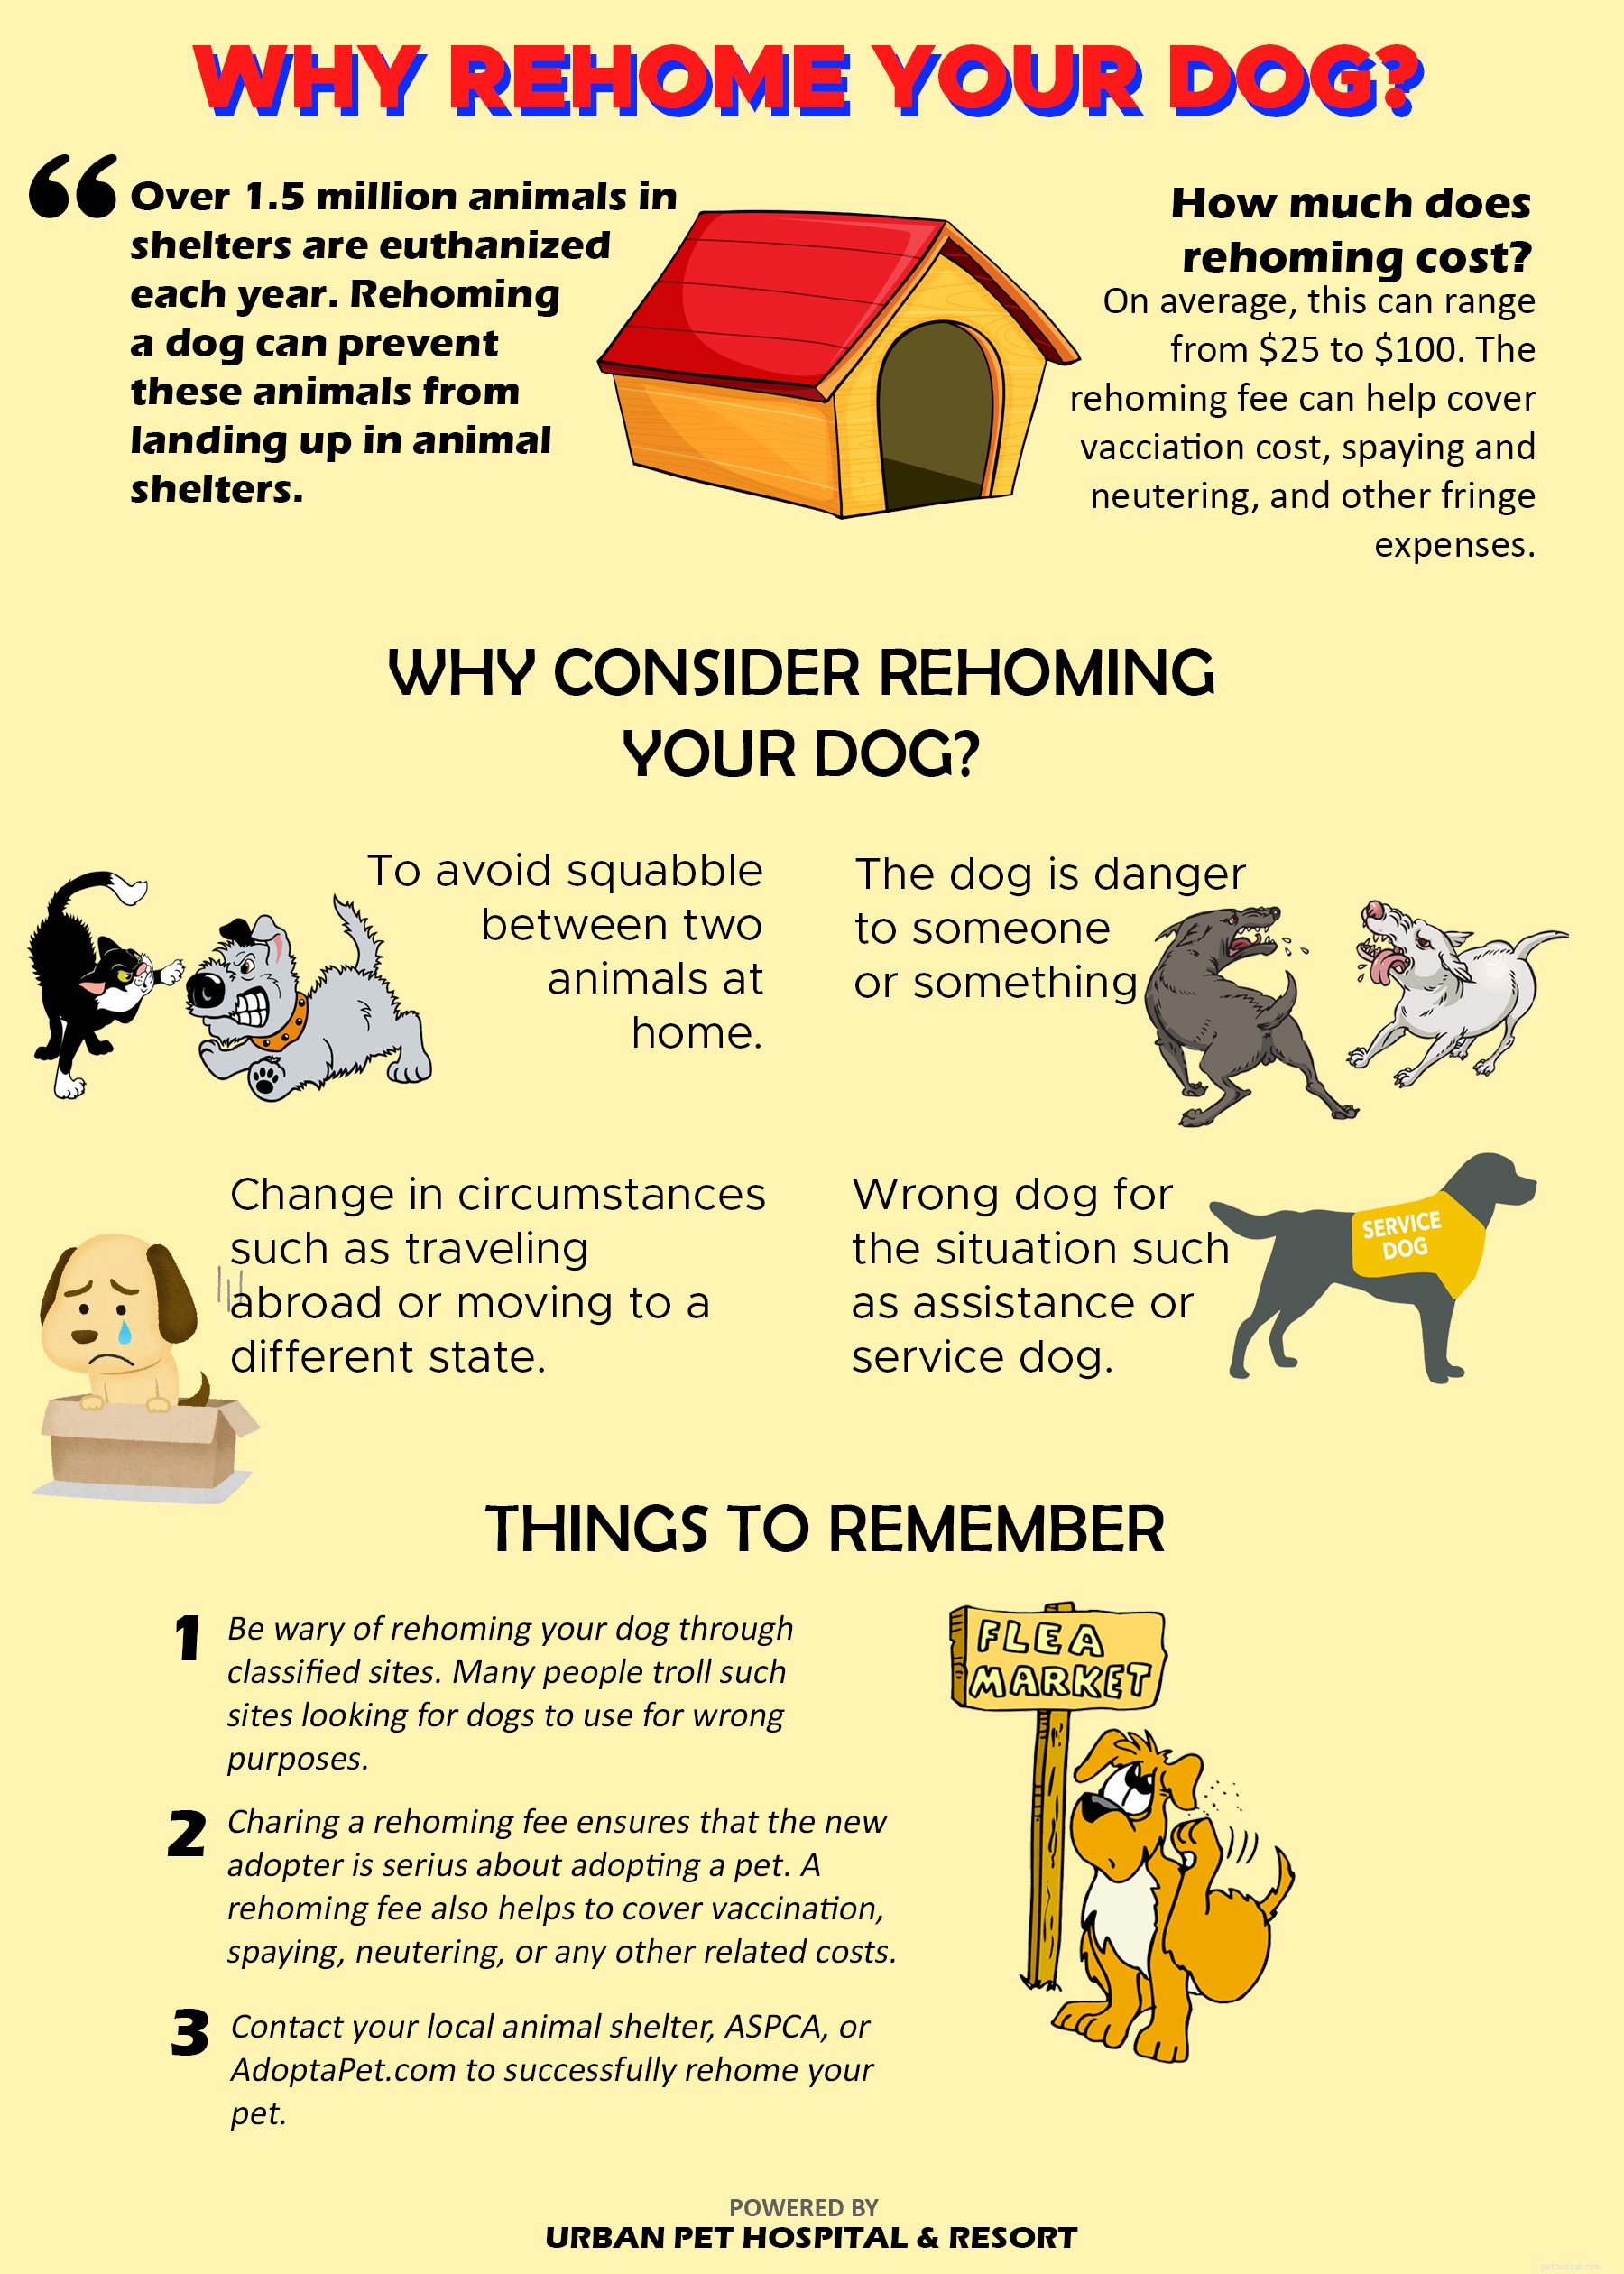 Fakta om omplacering och adoption av hund